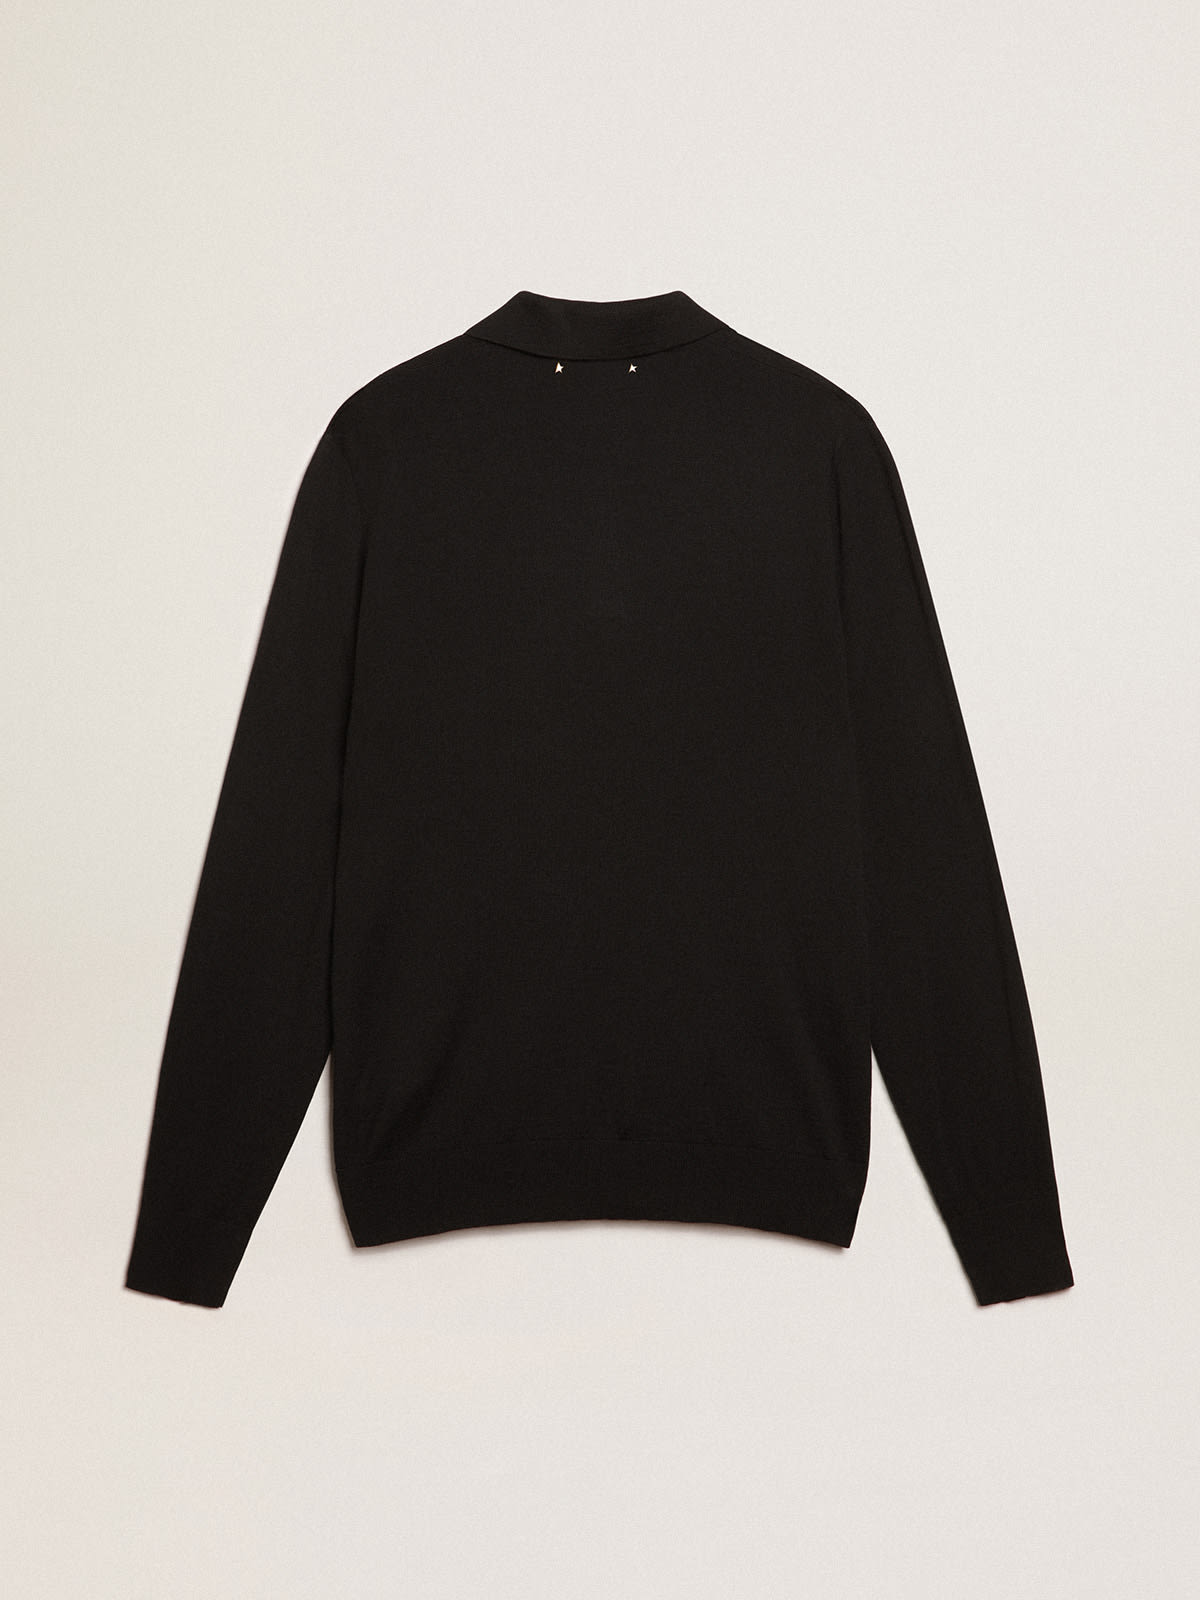 Golden Goose - Men’s long-sleeved polo shirt in black merino wool in 